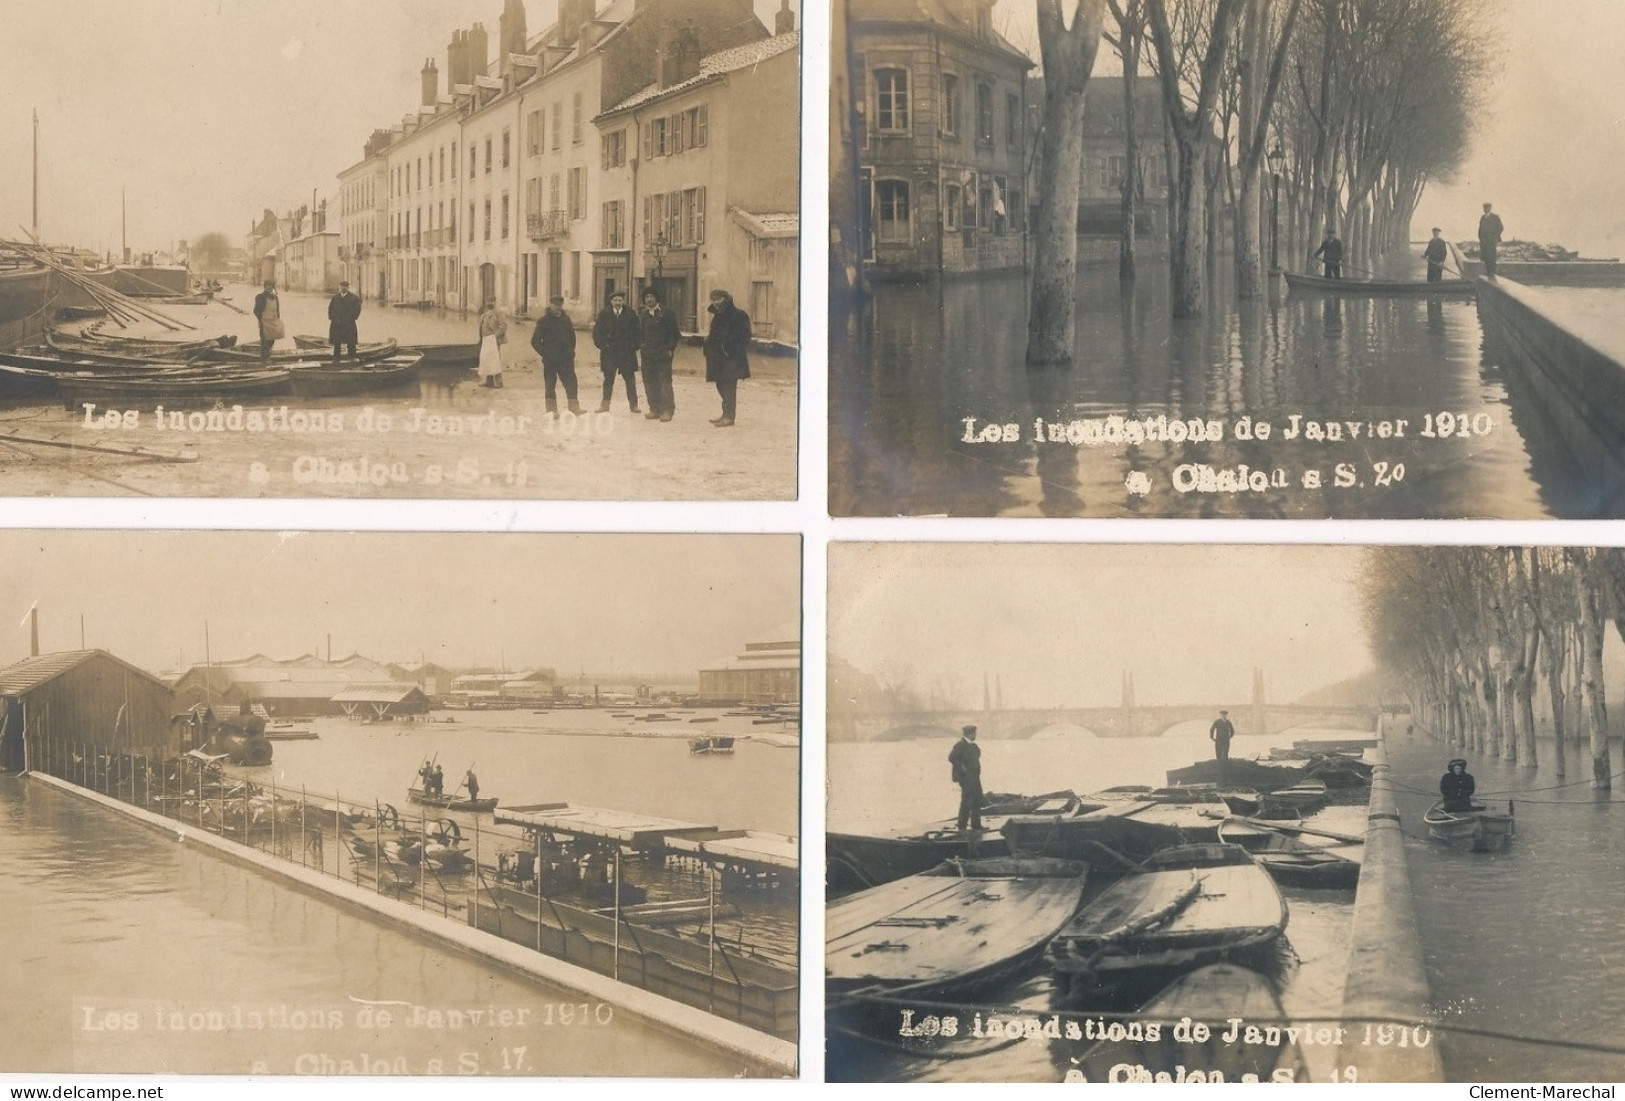 CHALONS-sur-SAONE : serie de 22 CPA, inondation 1910 janvier - tres bon etat